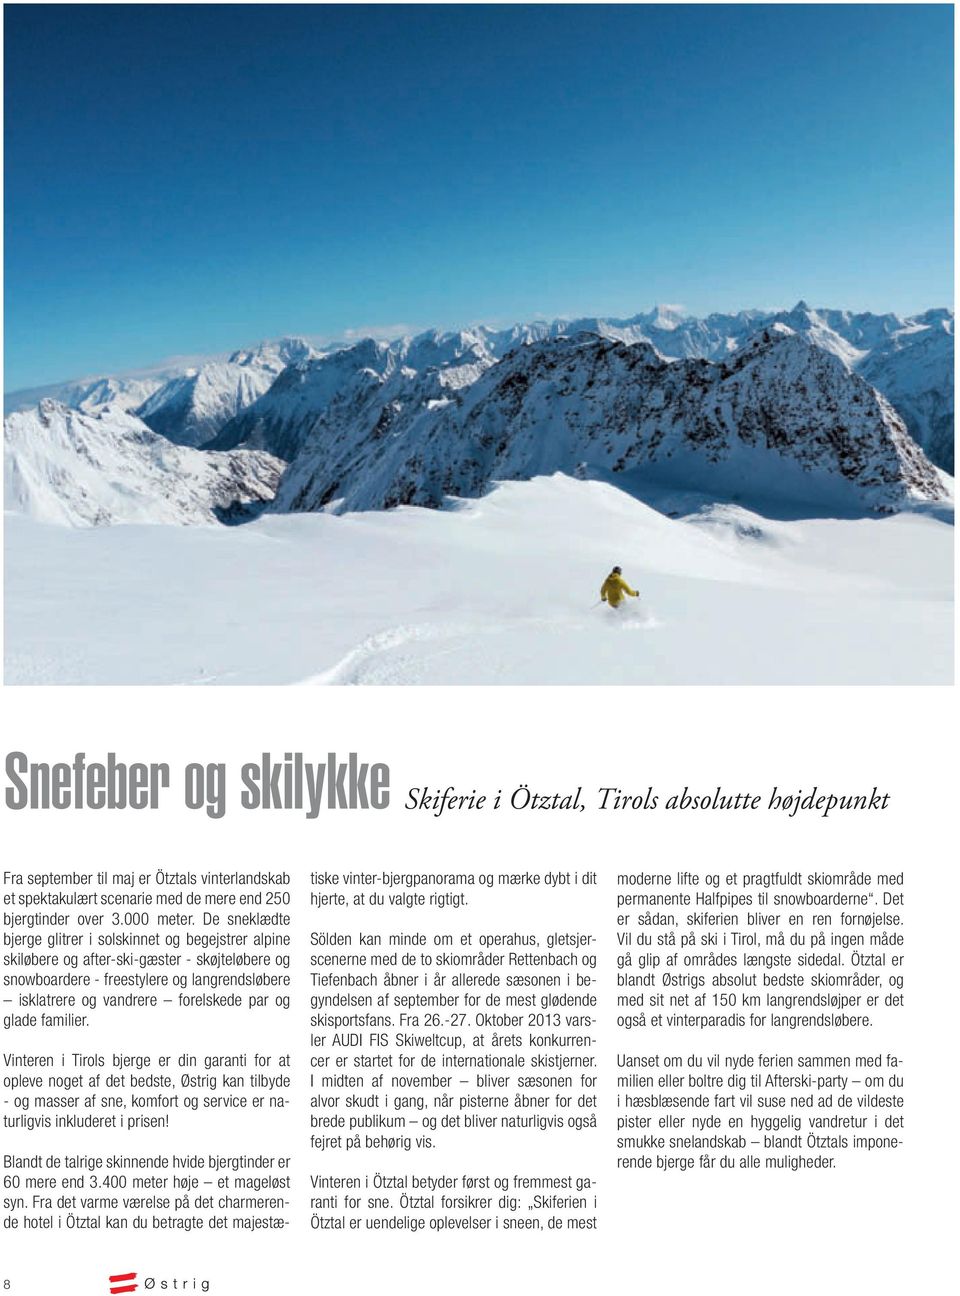 glade familier. Vinteren i Tirols bjerge er din garanti for at opleve noget af det bedste, Østrig kan tilbyde - og masser af sne, komfort og service er naturligvis inkluderet i prisen!